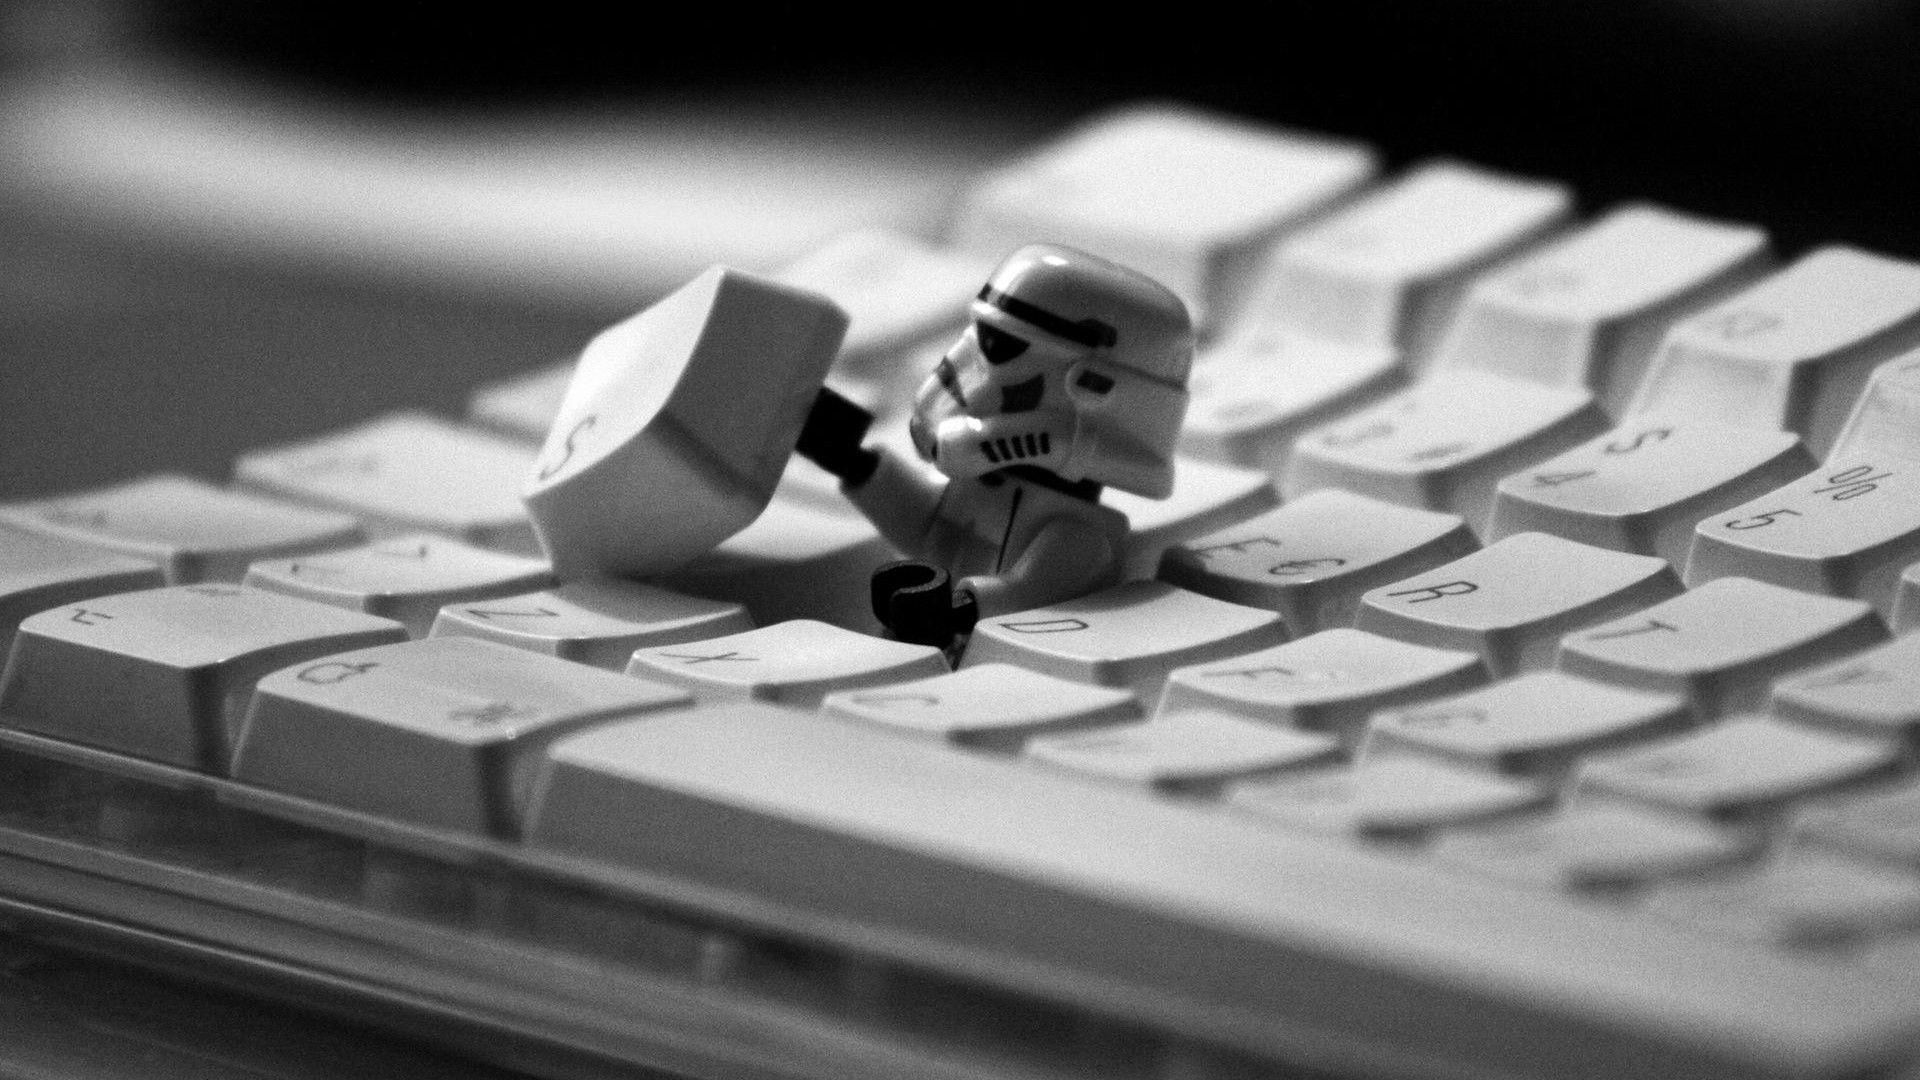 Star Wars Storm Trooper Keyboard Wallpaper